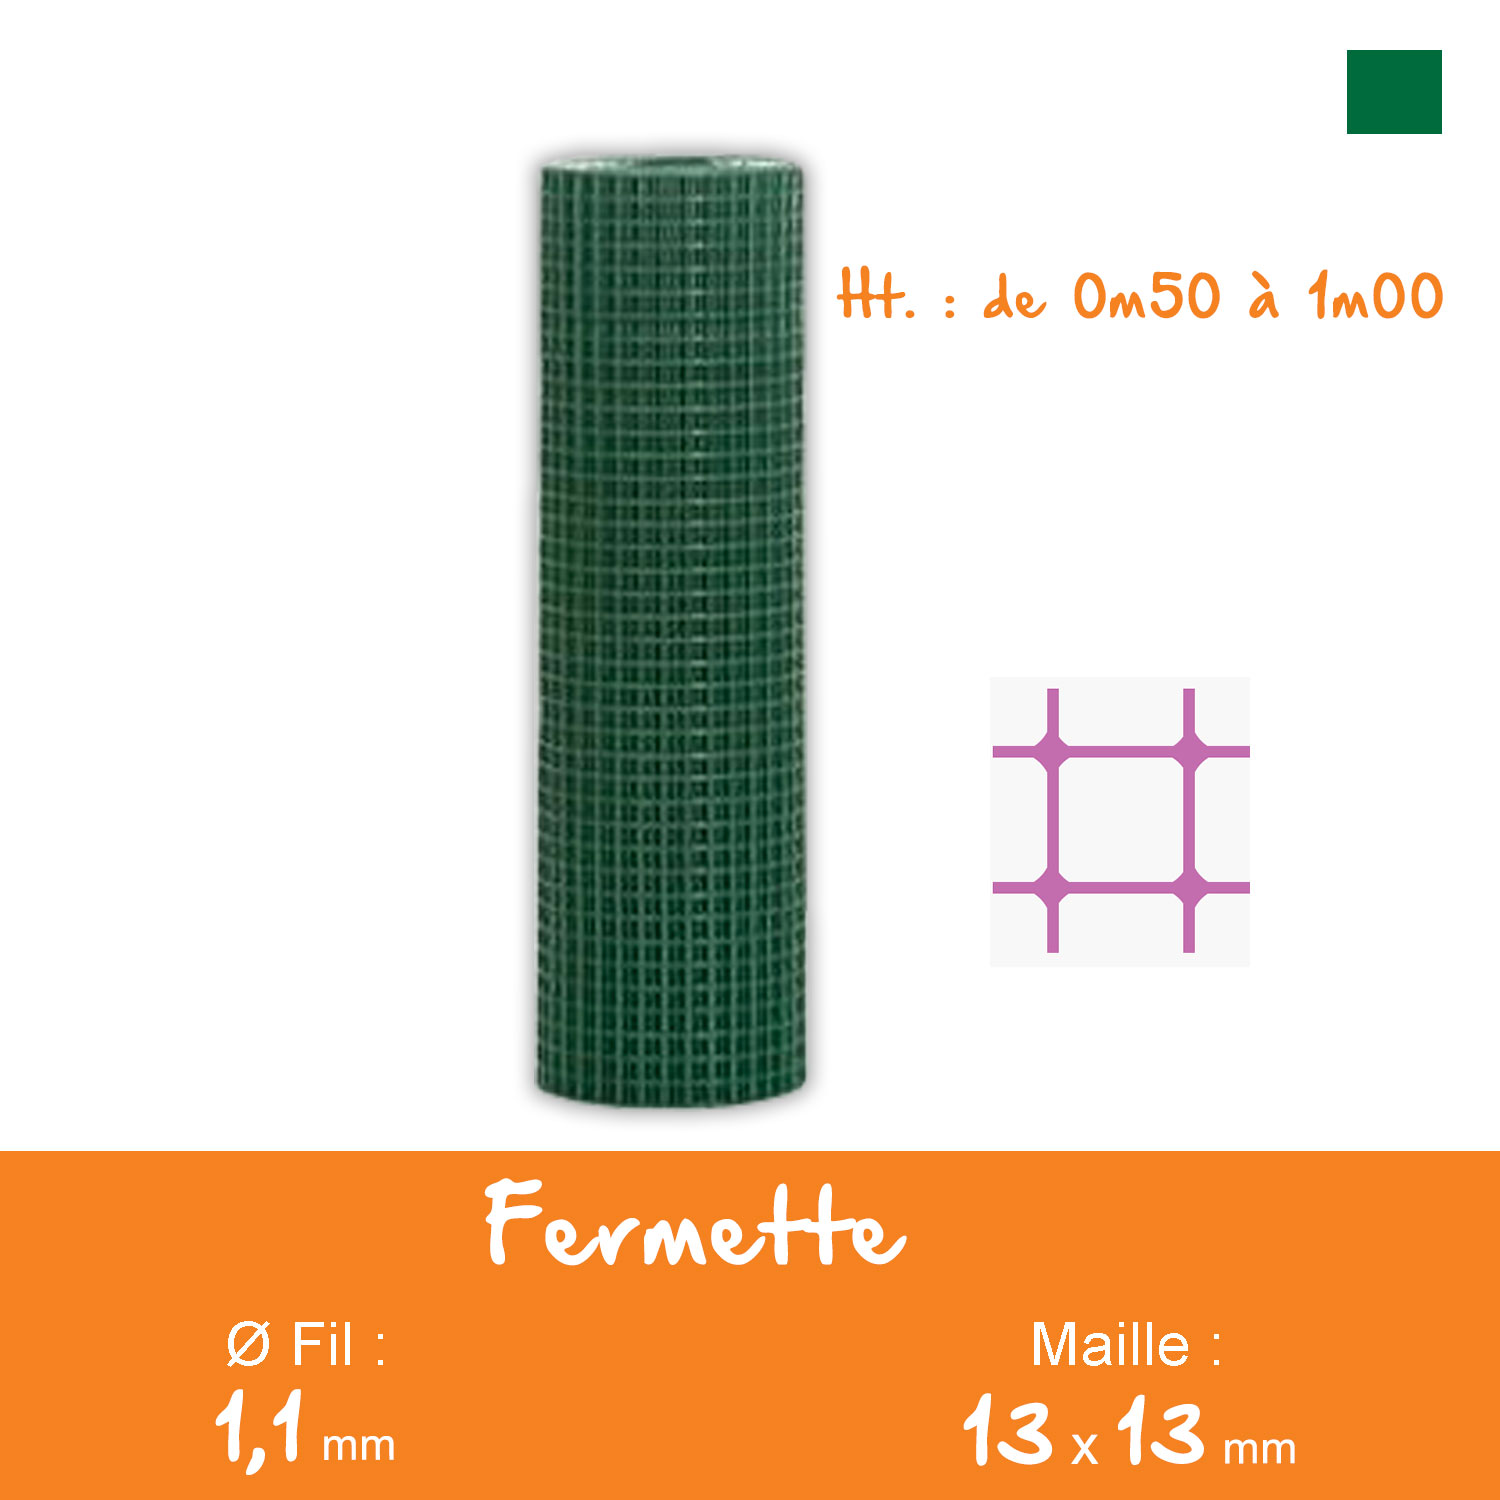 Grillage Fermette Plastifié 13x13mm Ø1,1mm Ht.0m50 Lg.5ml